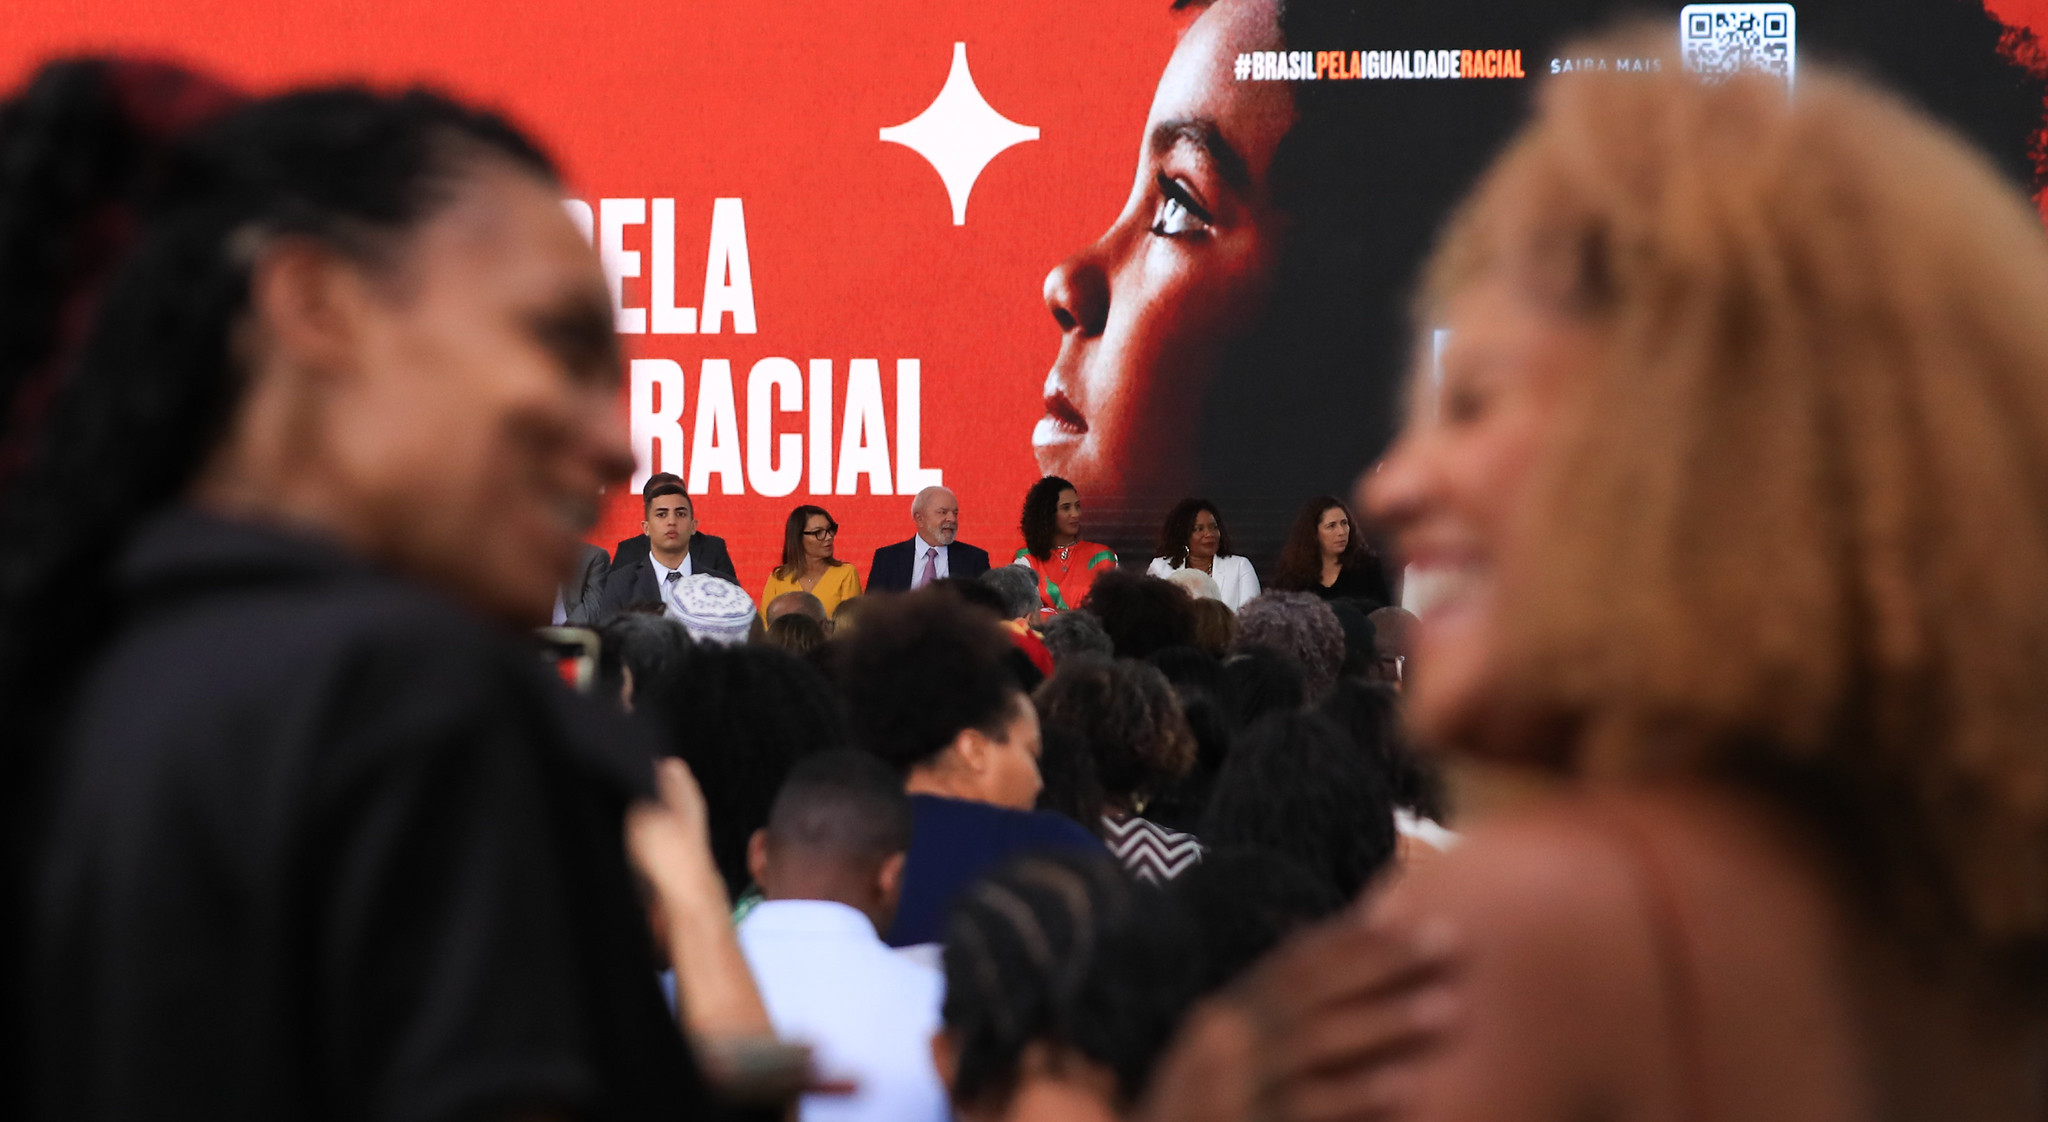 Zum internationalen Tag gegen Rassismus am 21. März 2023 verabschiedete die Regierung Lula weitere Maßnahmen zur Förderung der ethnischen Gleichstellung.
Foto: Lula Marques / Fotospublicas
CC BY-NC 2.0